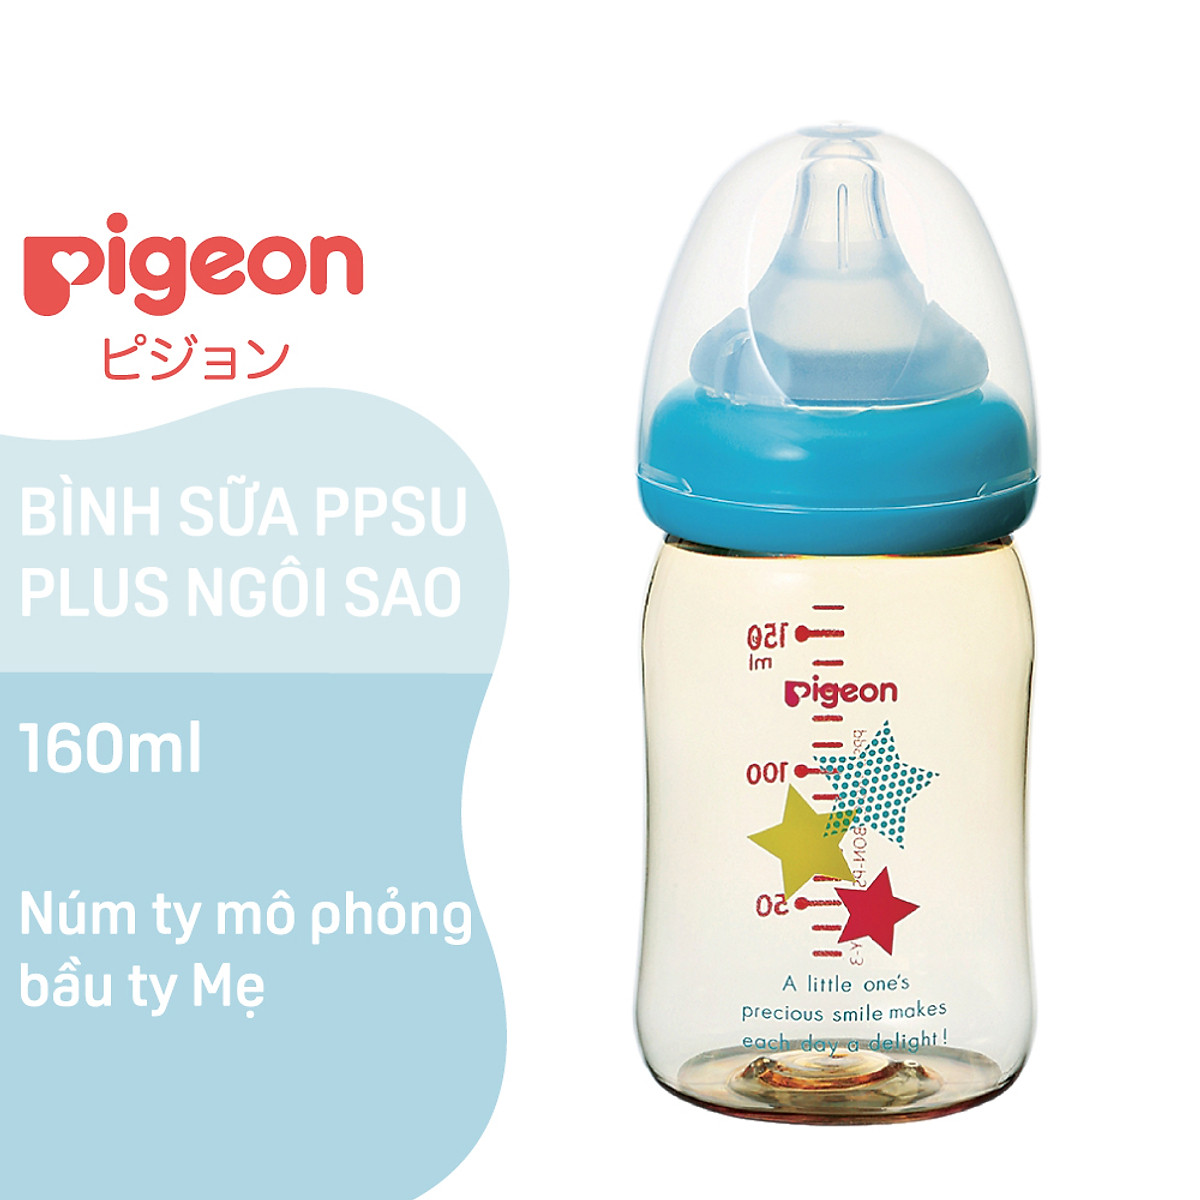 Bình sữa PPSU Plus Ngôi sao Pigeon 160ml (SS)